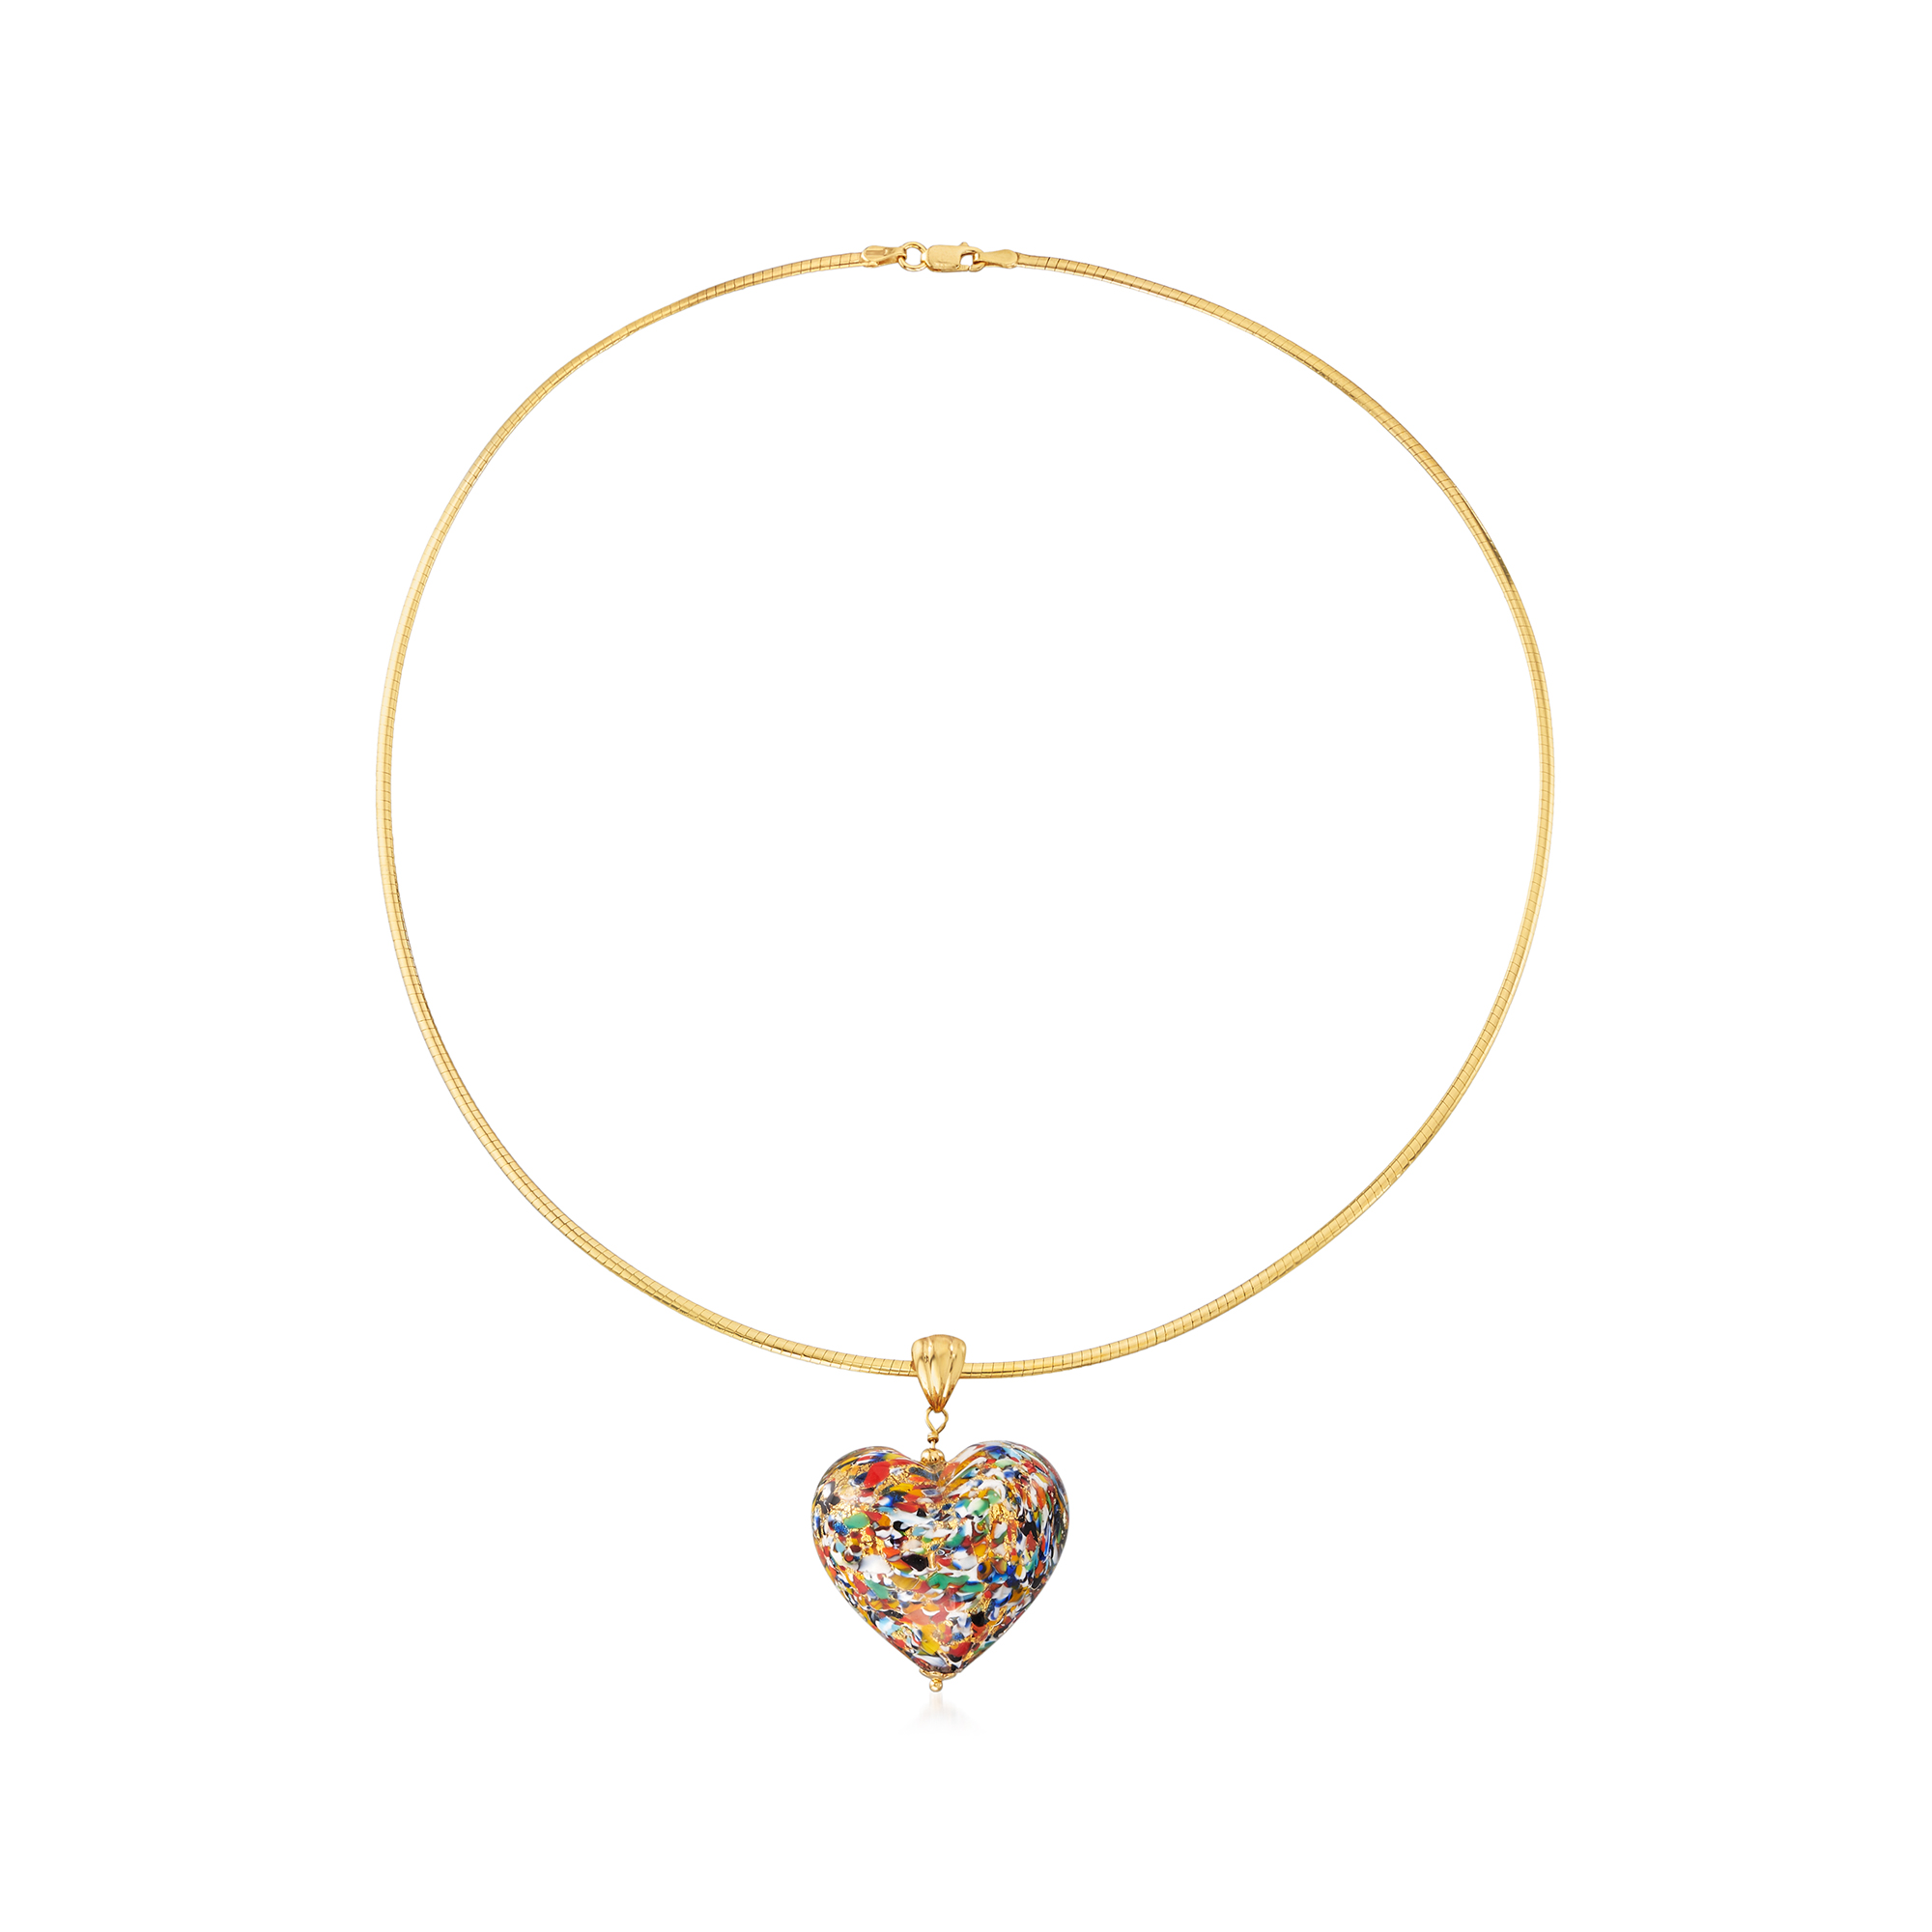 Italian Multicolored Murano Glass Heart Pendant with Omega Chain 